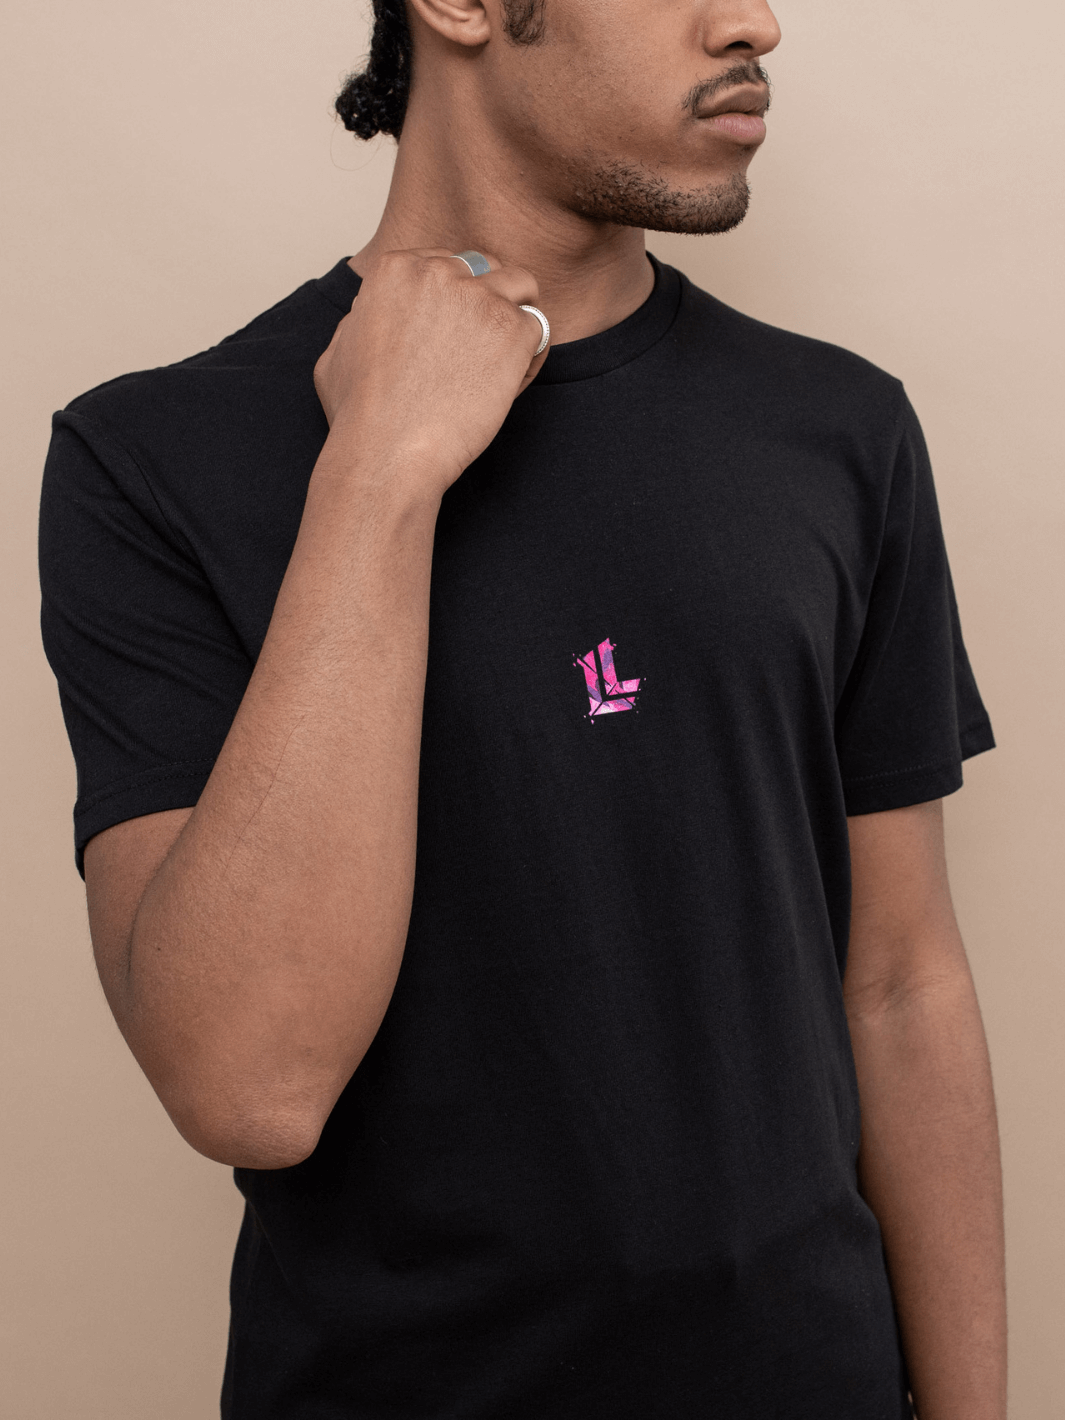 T-shirt essential Limitlex nera con logo sul petto.